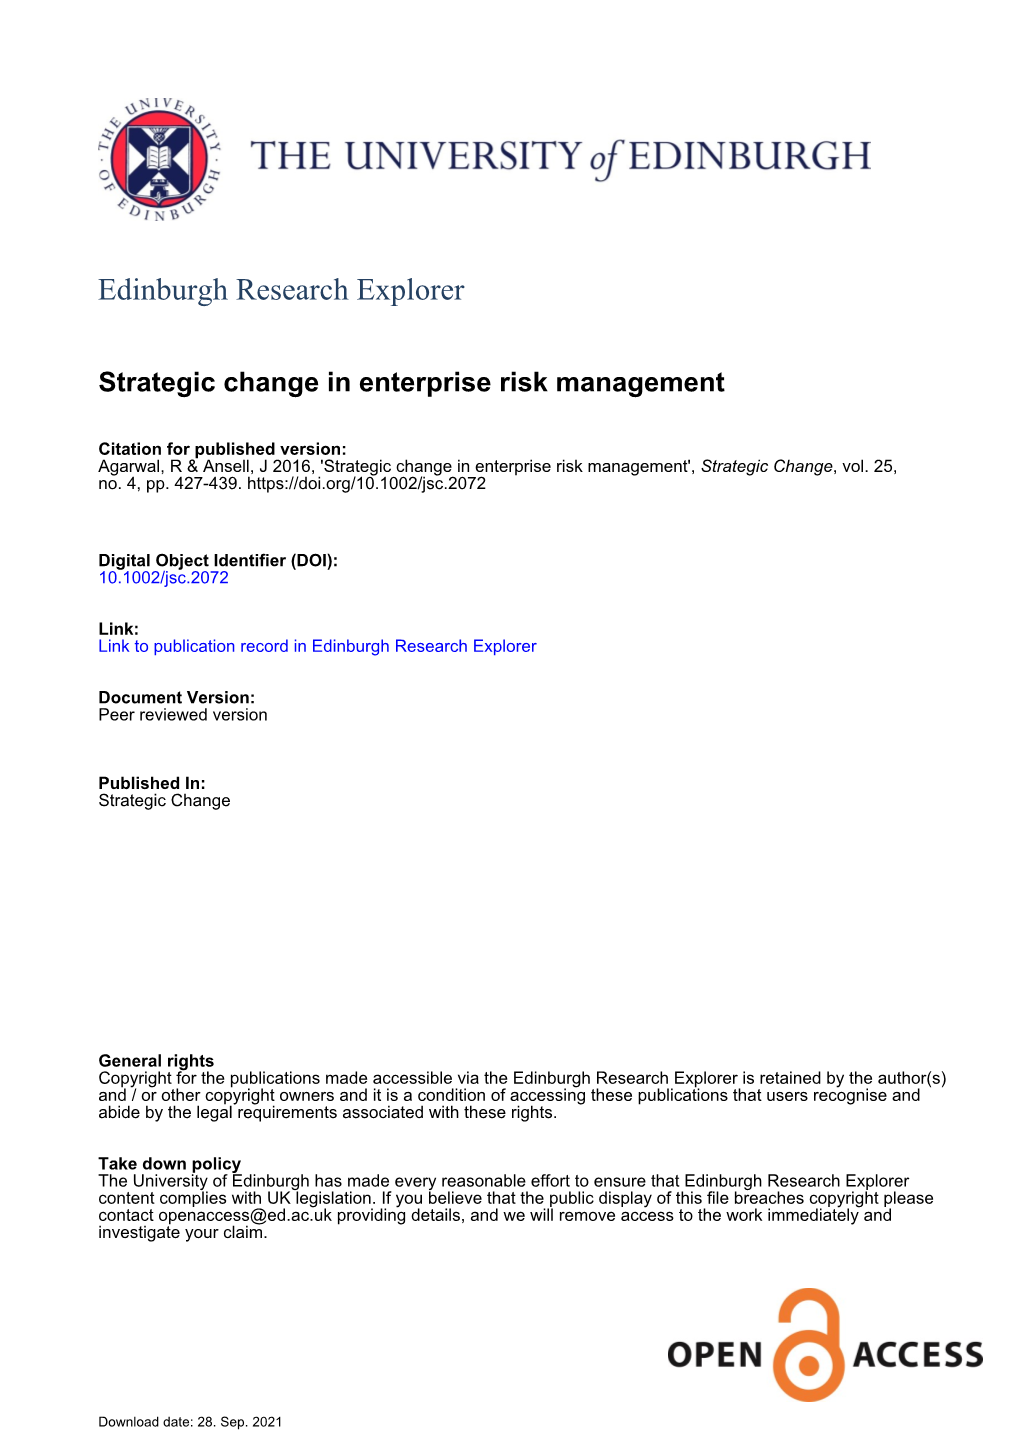 Strategic Change in Enterprise Risk Management